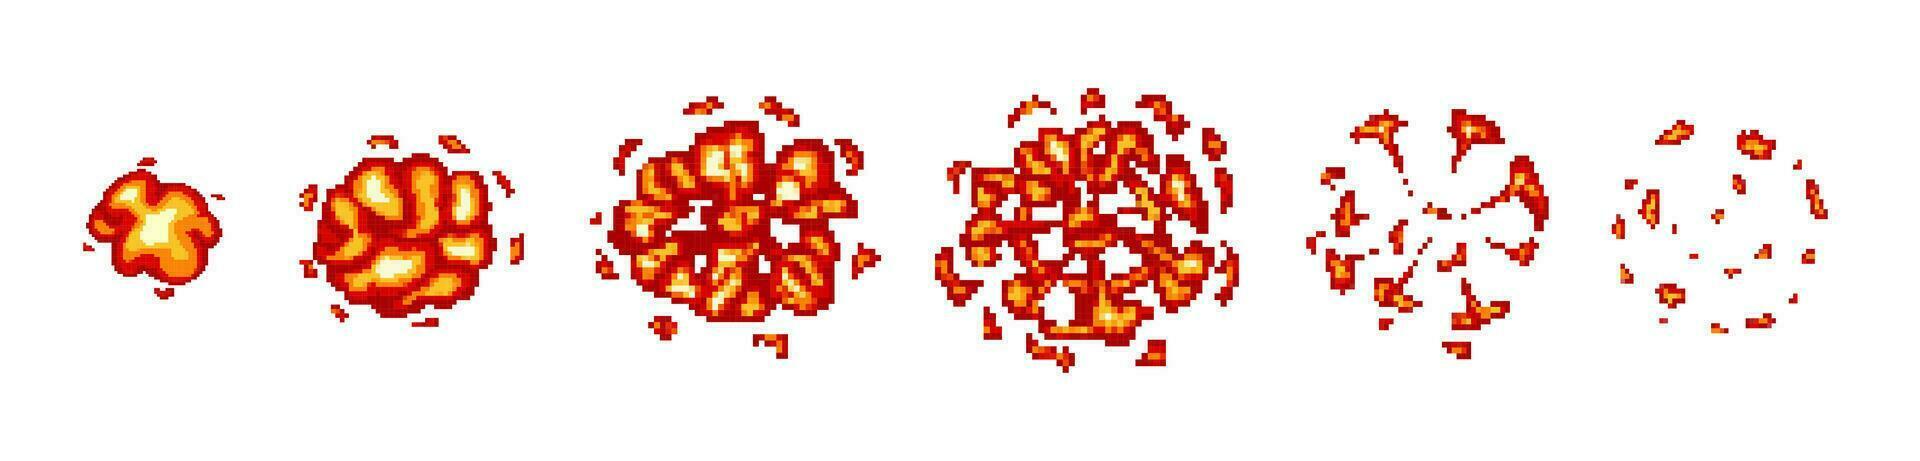 8 poco juego píxel explosión animación. retro juego explosión vector